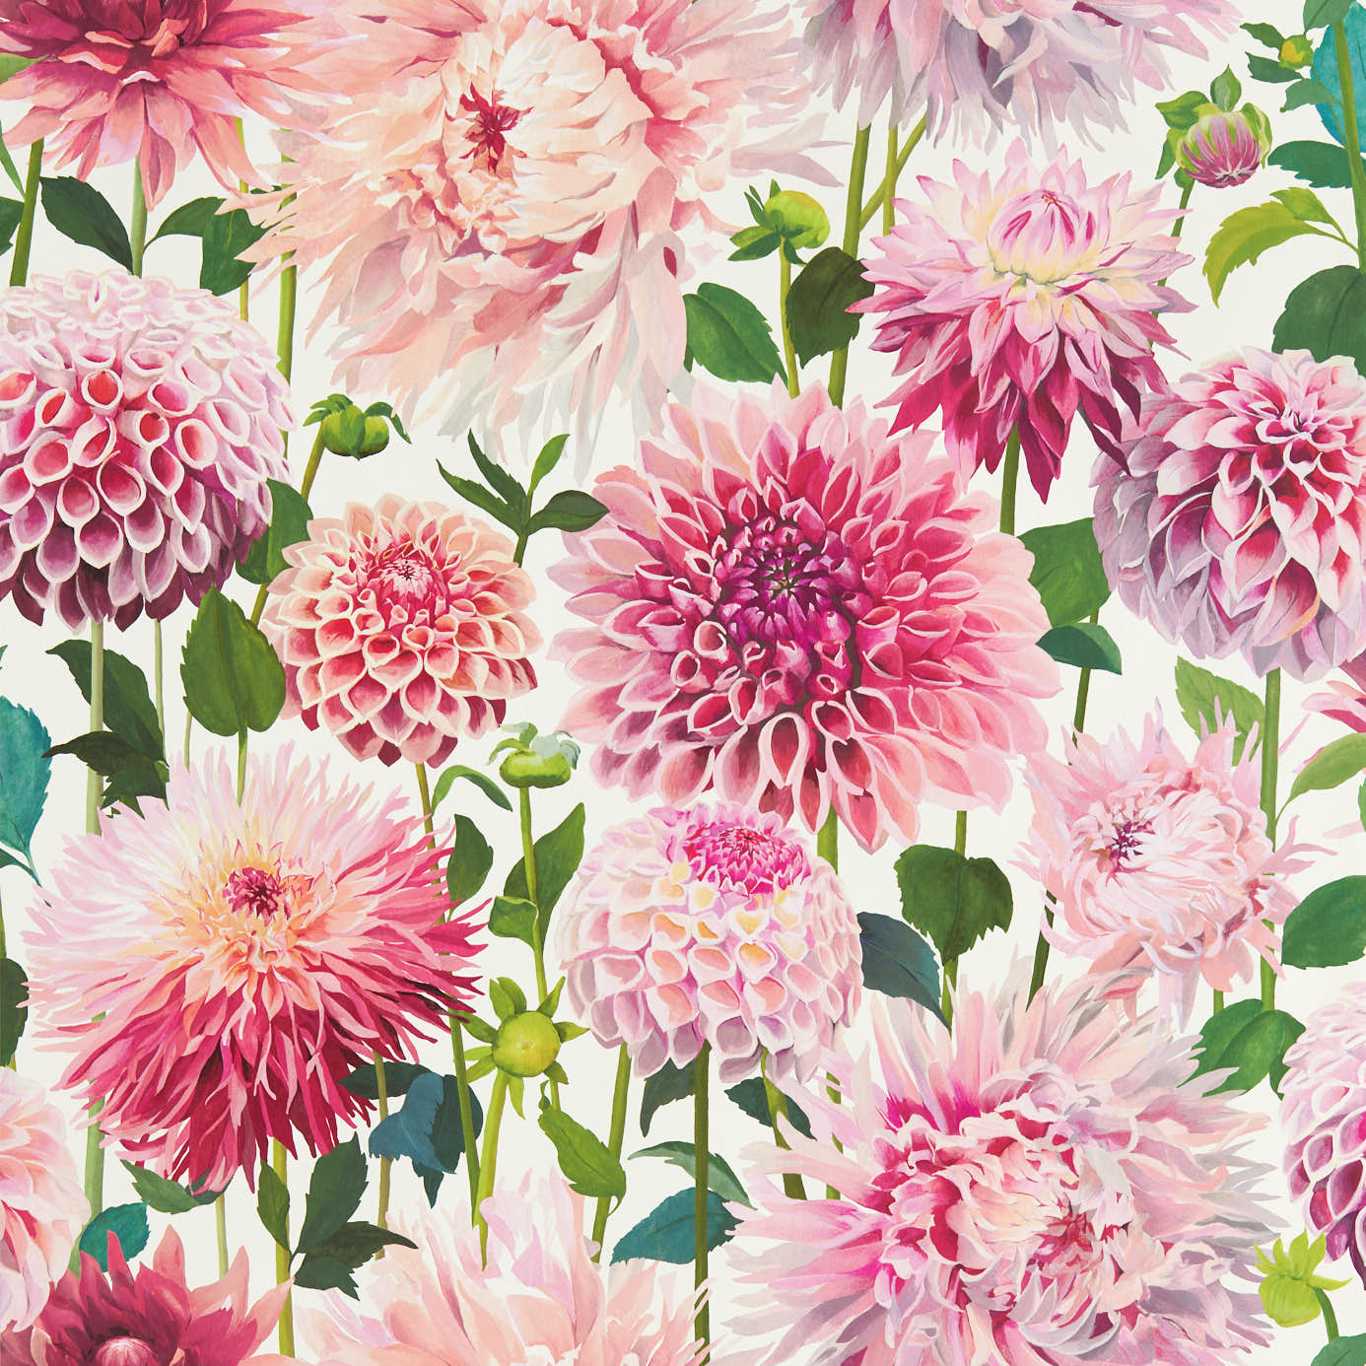 Dahlia Blossom/Emerald/New Beginnings Wallpaper by HAR